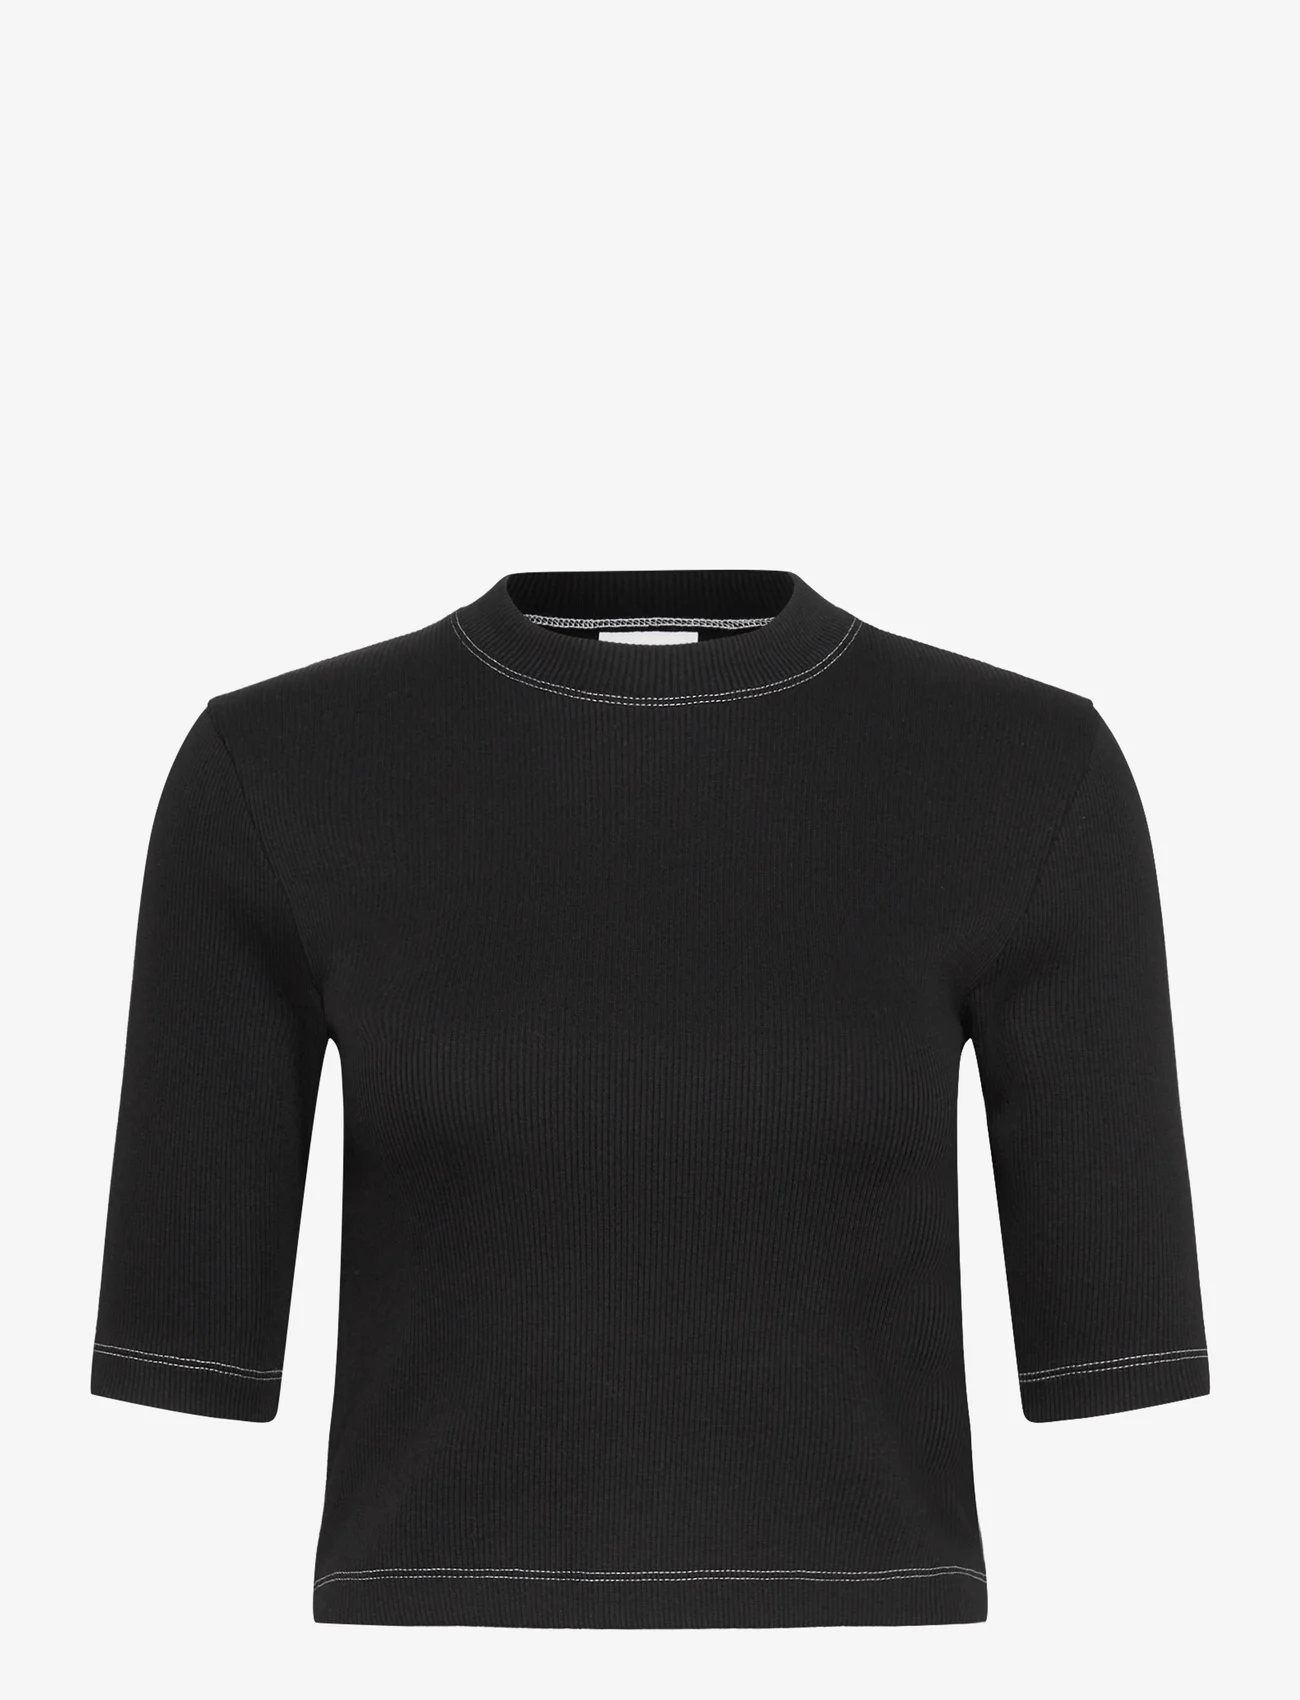 Day Birger et Mikkelsen - Bram - Heavy Rib - t-shirts - black - 0